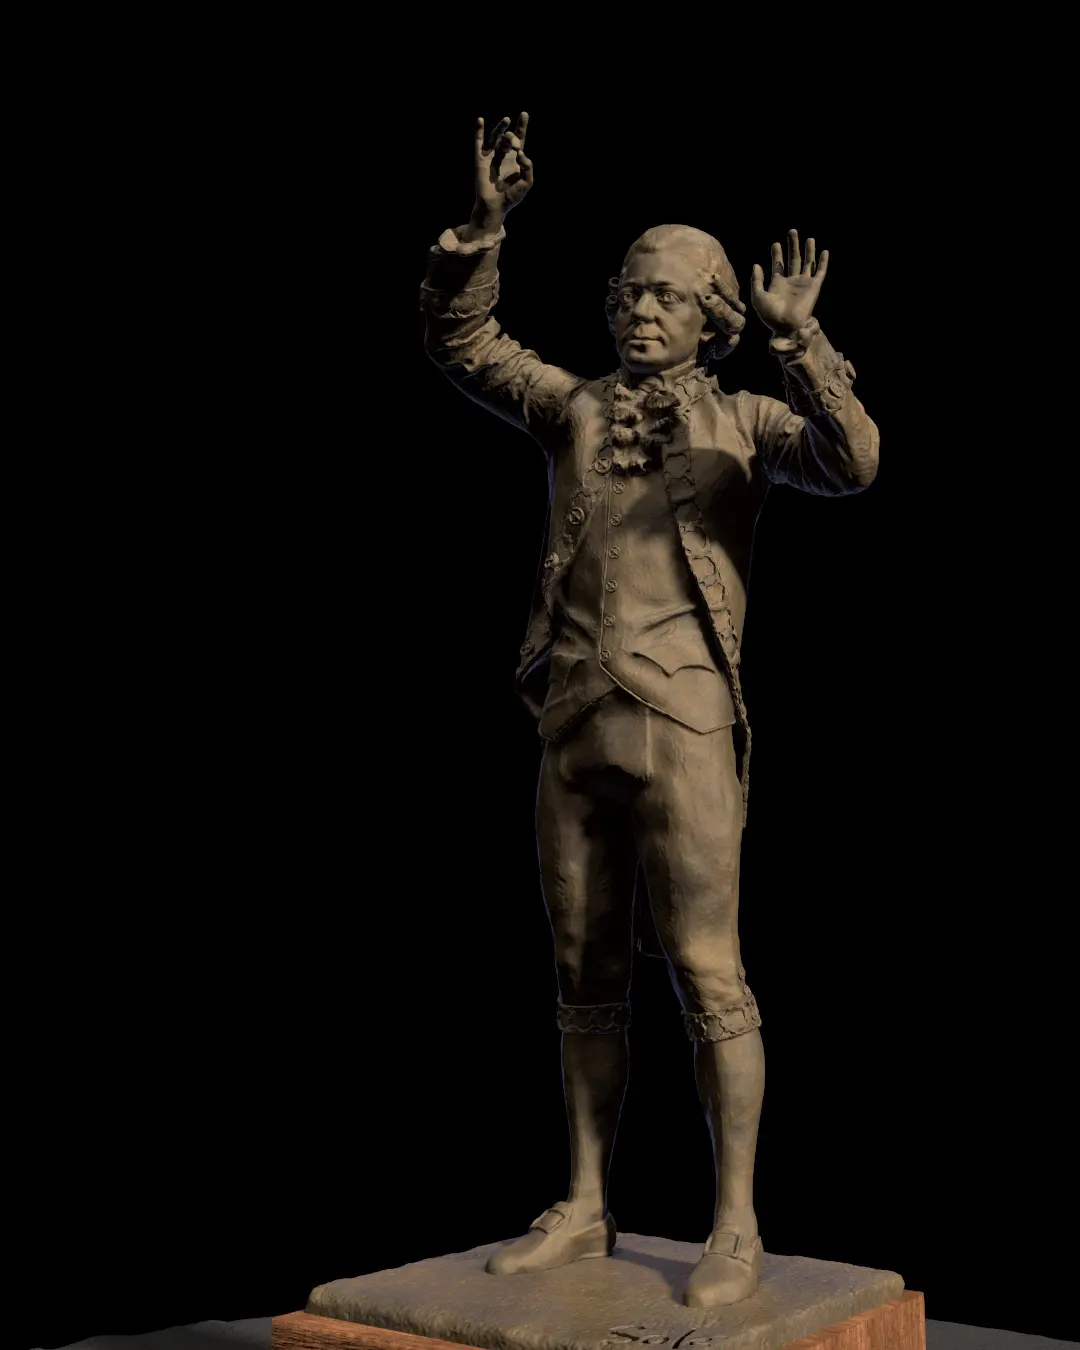 Wolfgang-Amadeus-Mozart-statue/Rendering-of-Wolfgang-Amadeus-Mozart-statue-modeled-by-Emil-Sole-8.webp